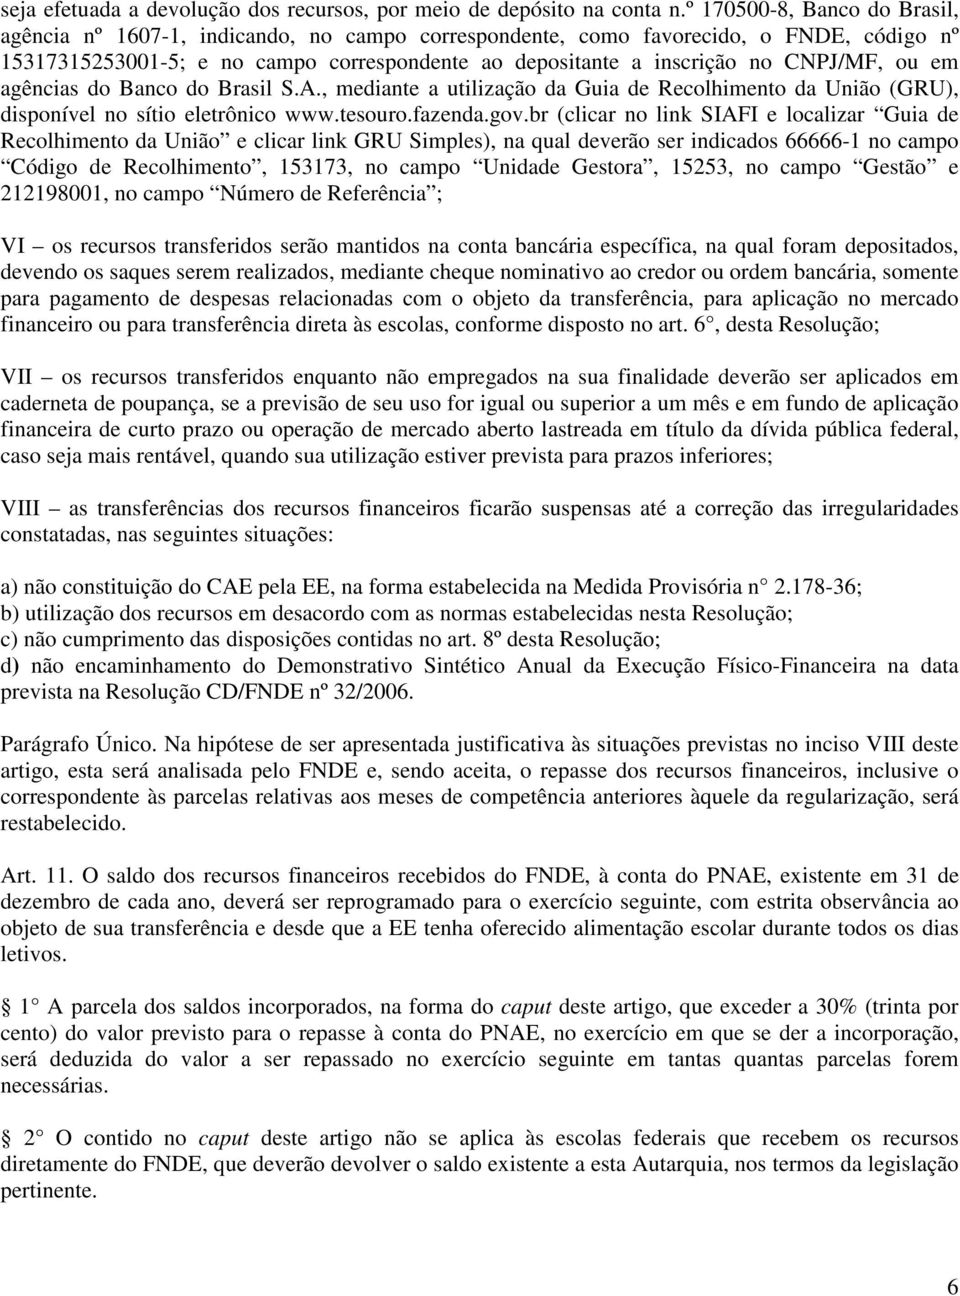 CNPJ/MF, ou em agências do Banco do Brasil S.A., mediante a utilização da Guia de Recolhimento da União (GRU), disponível no sítio eletrônico www.tesouro.fazenda.gov.